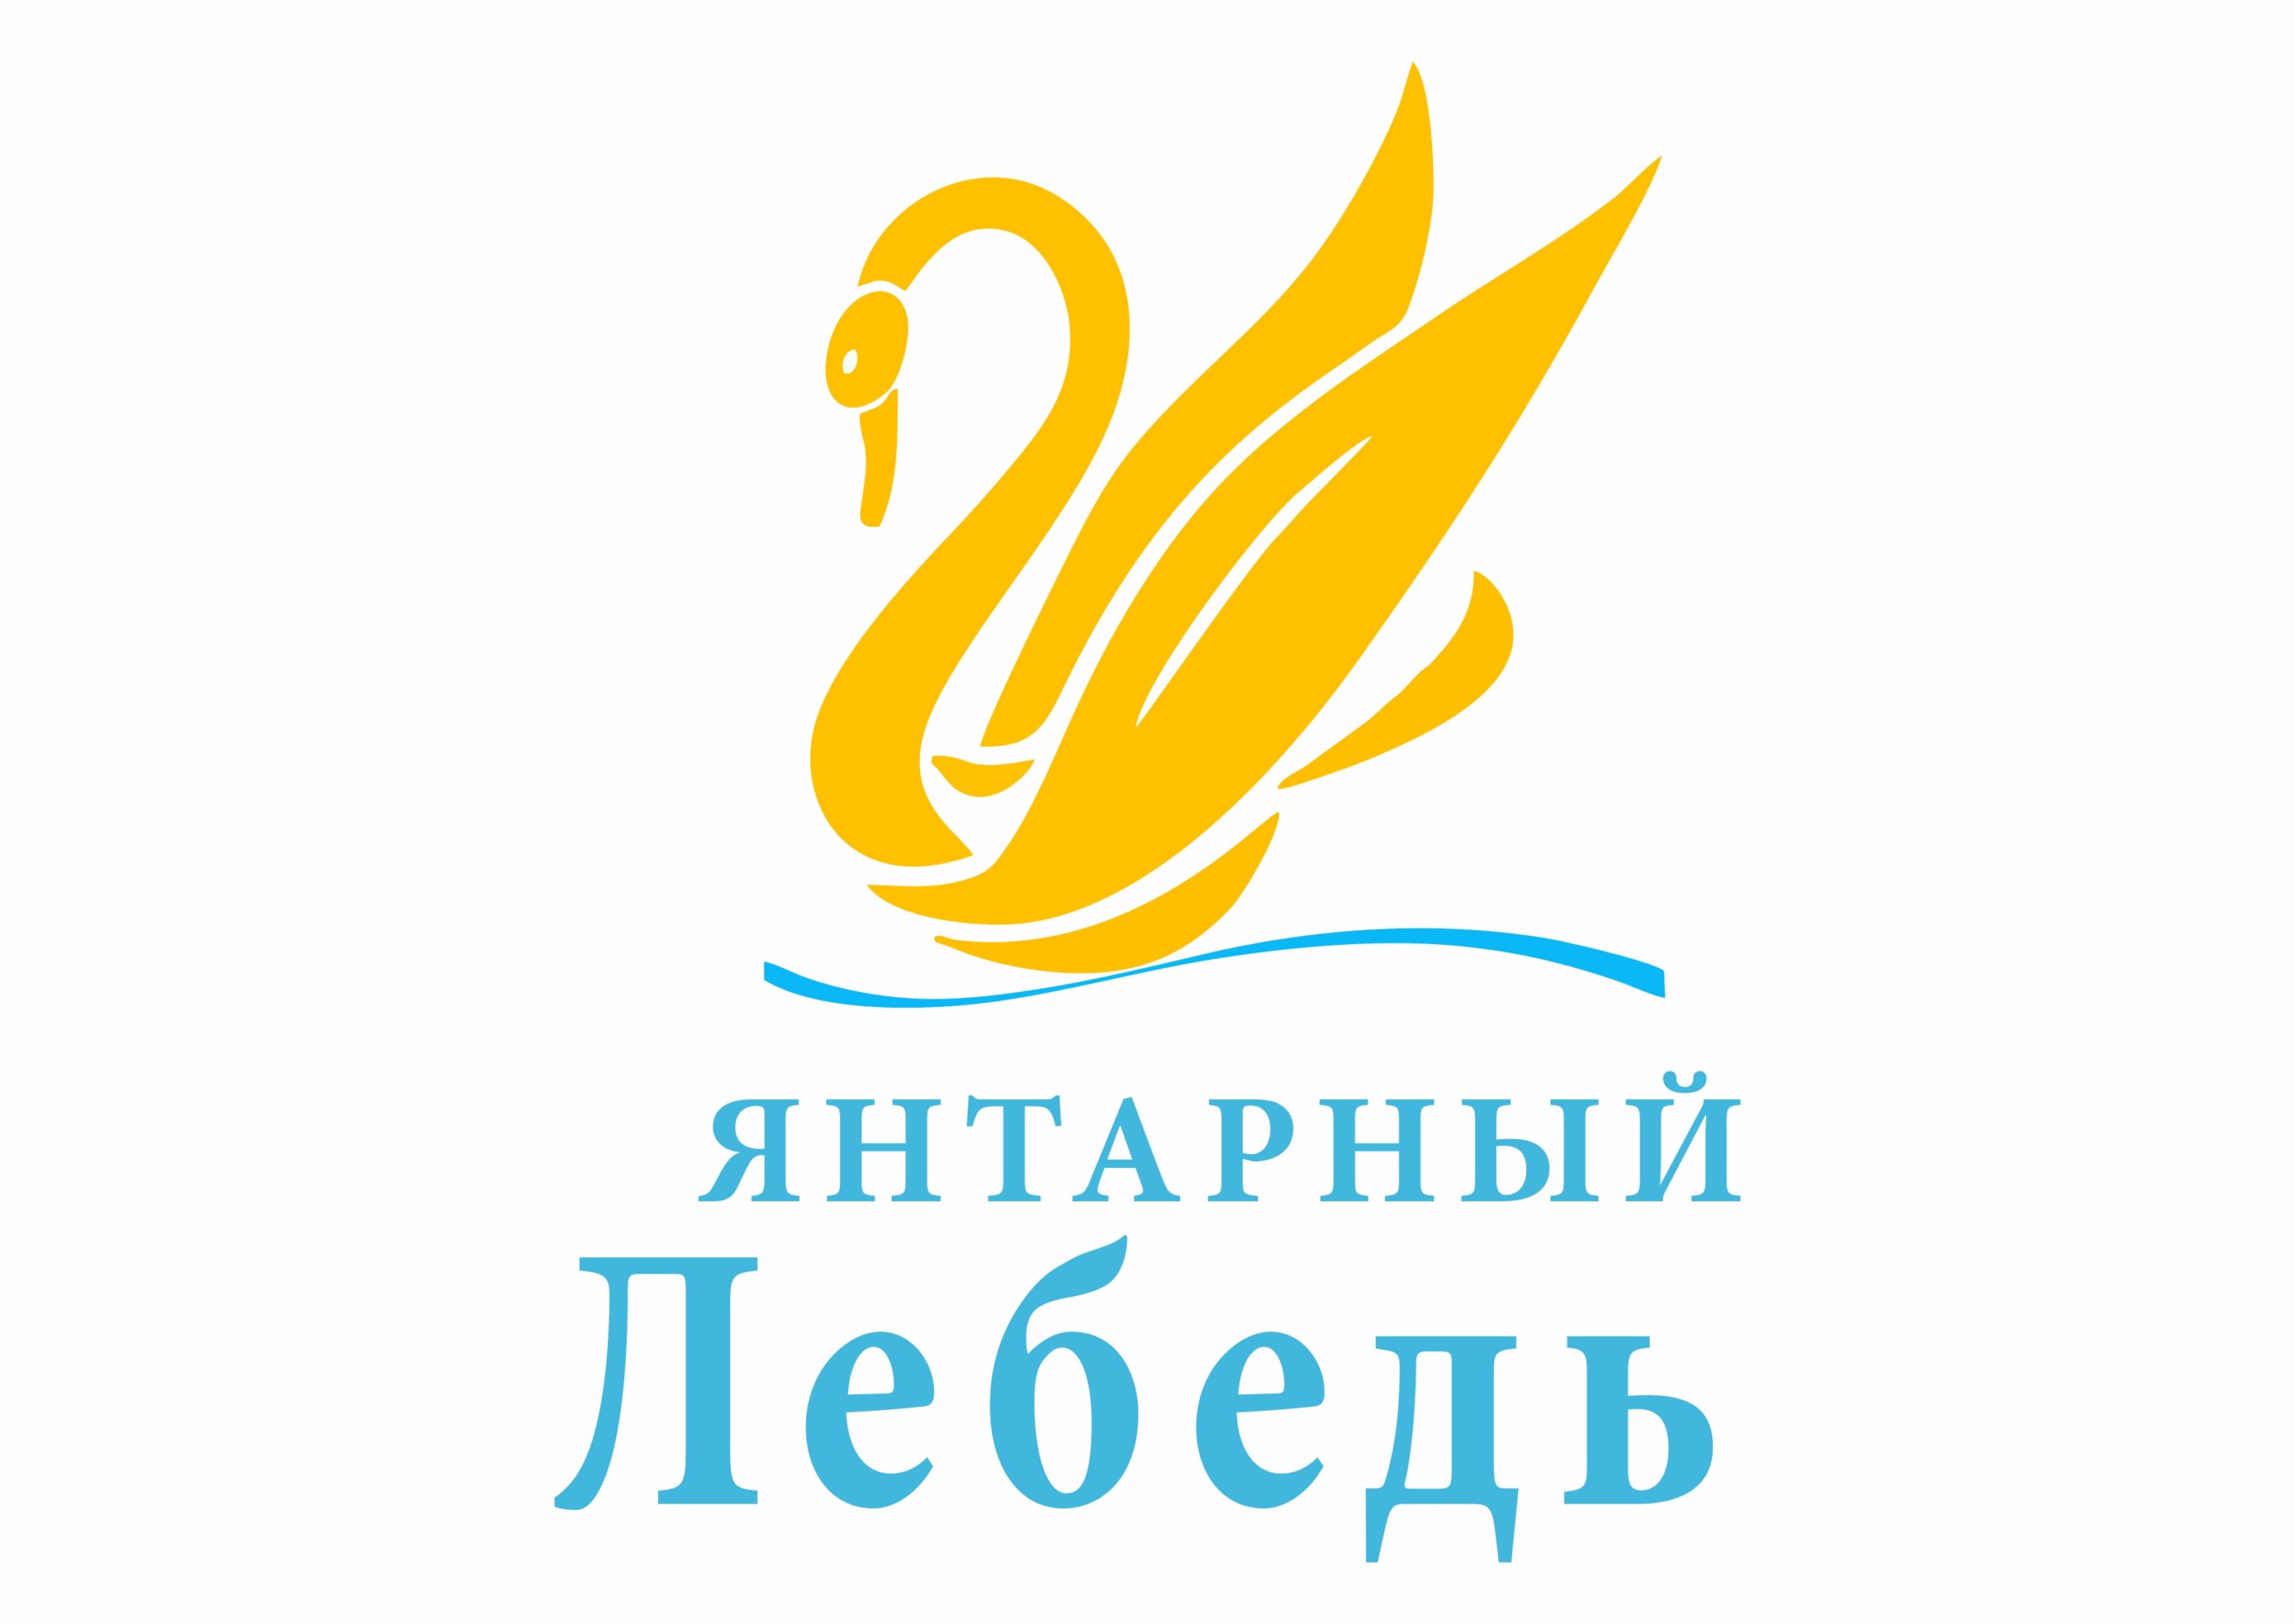 Творческий конкурс «Янтарный лебедь-2021»